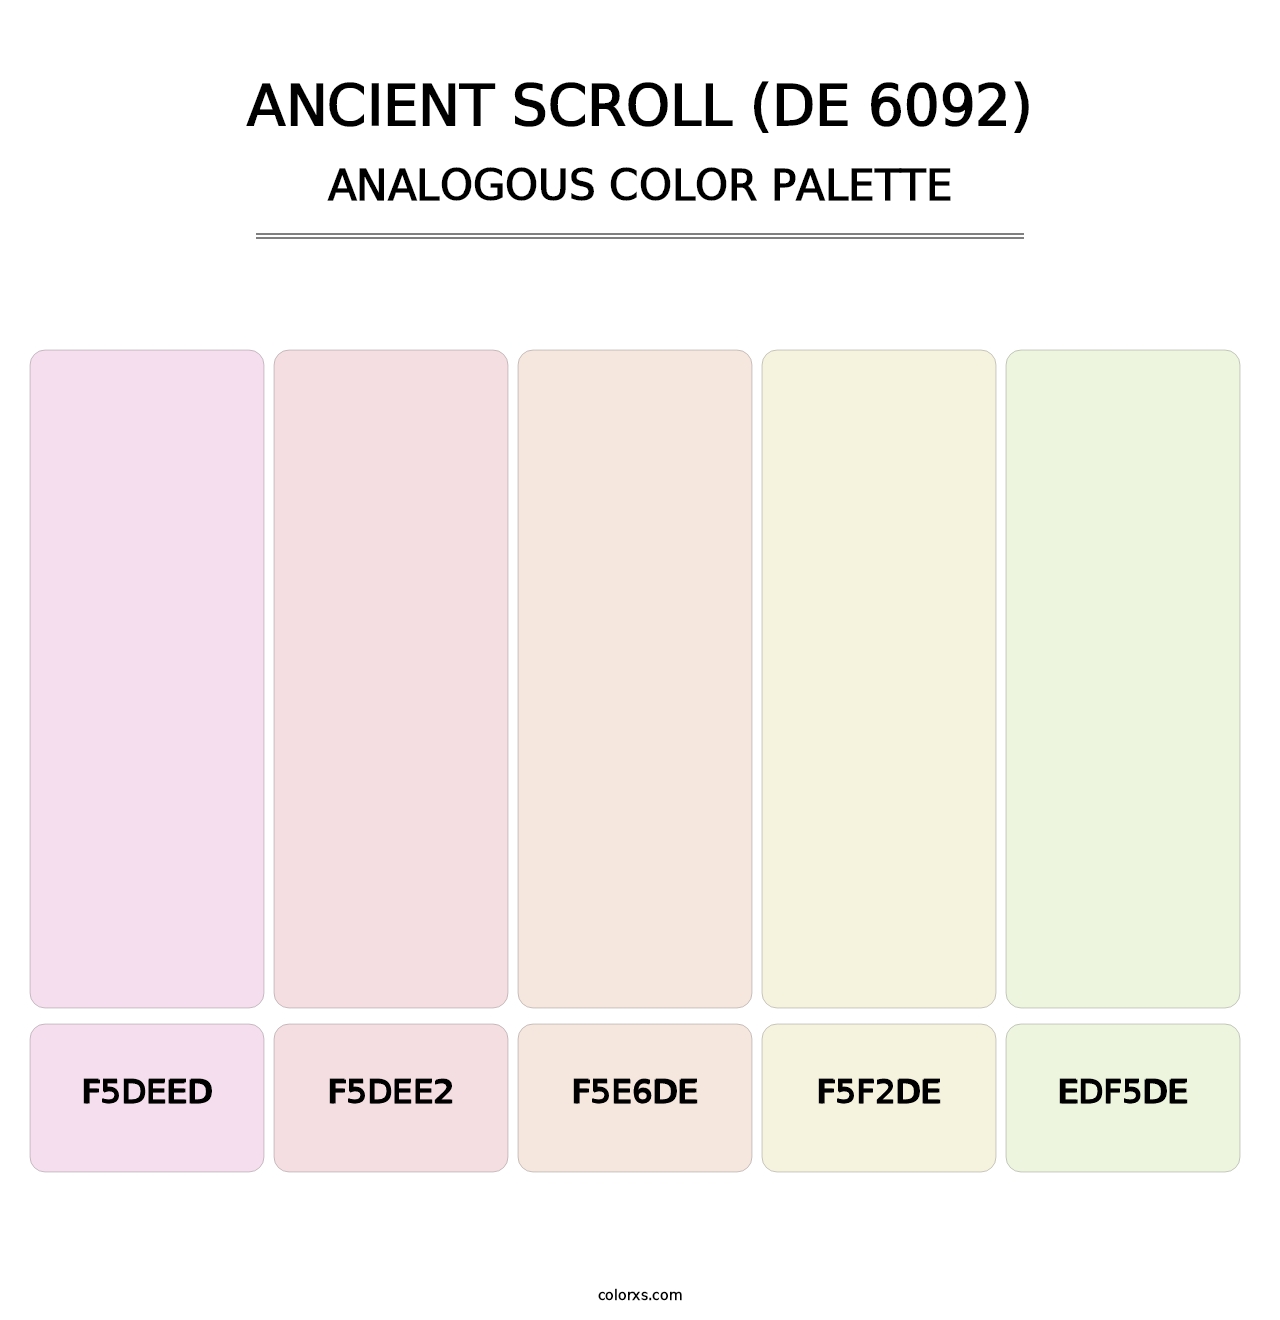 Ancient Scroll (DE 6092) - Analogous Color Palette